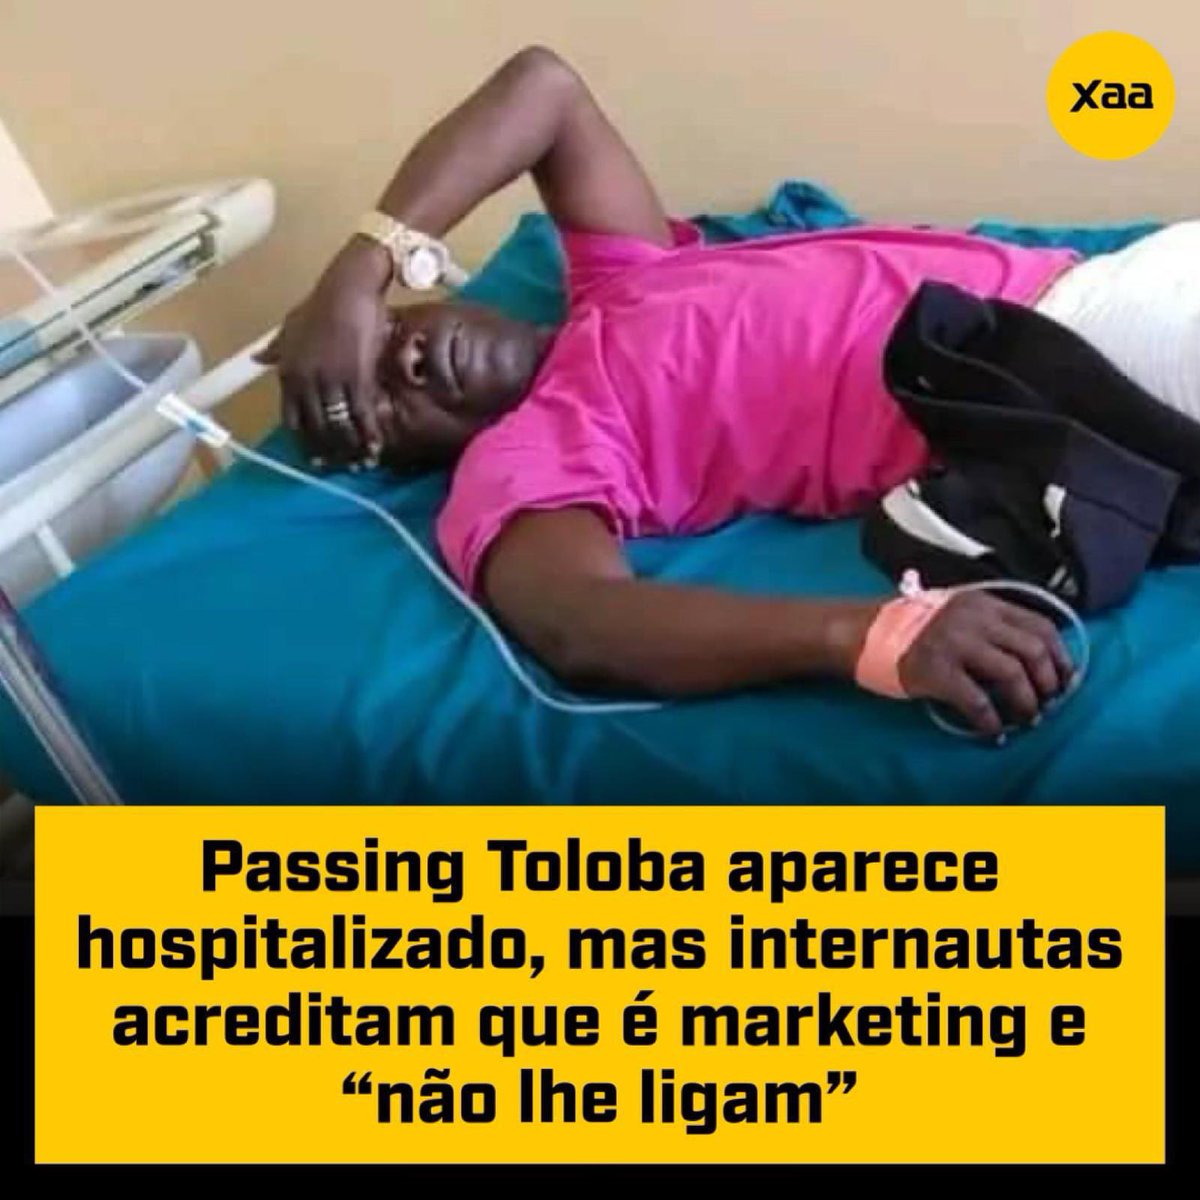 👉Passing Toloba aparece hospitalizado, mas internautas acreditam que é marketing e “não lhe ligam”.